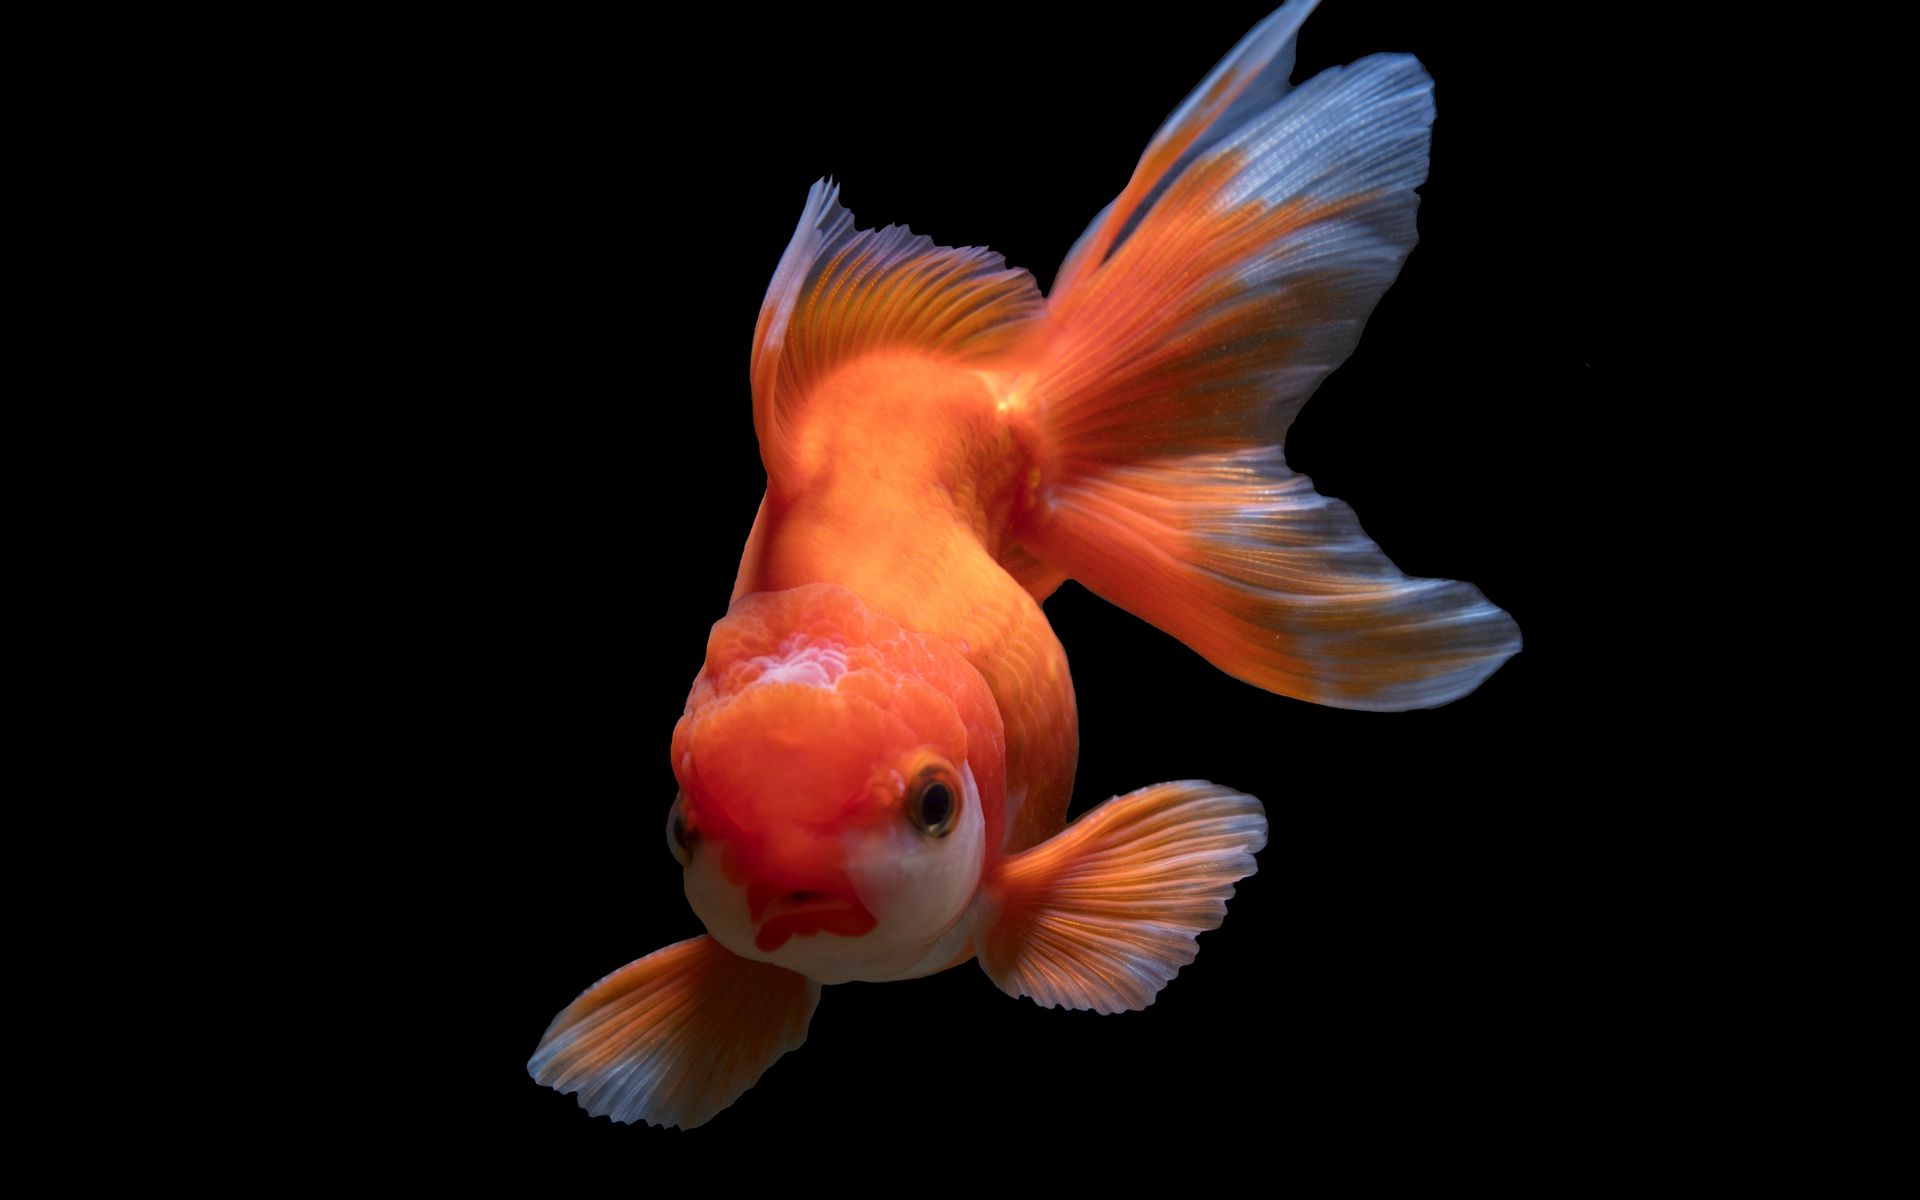 Золотая рыбка Оранда